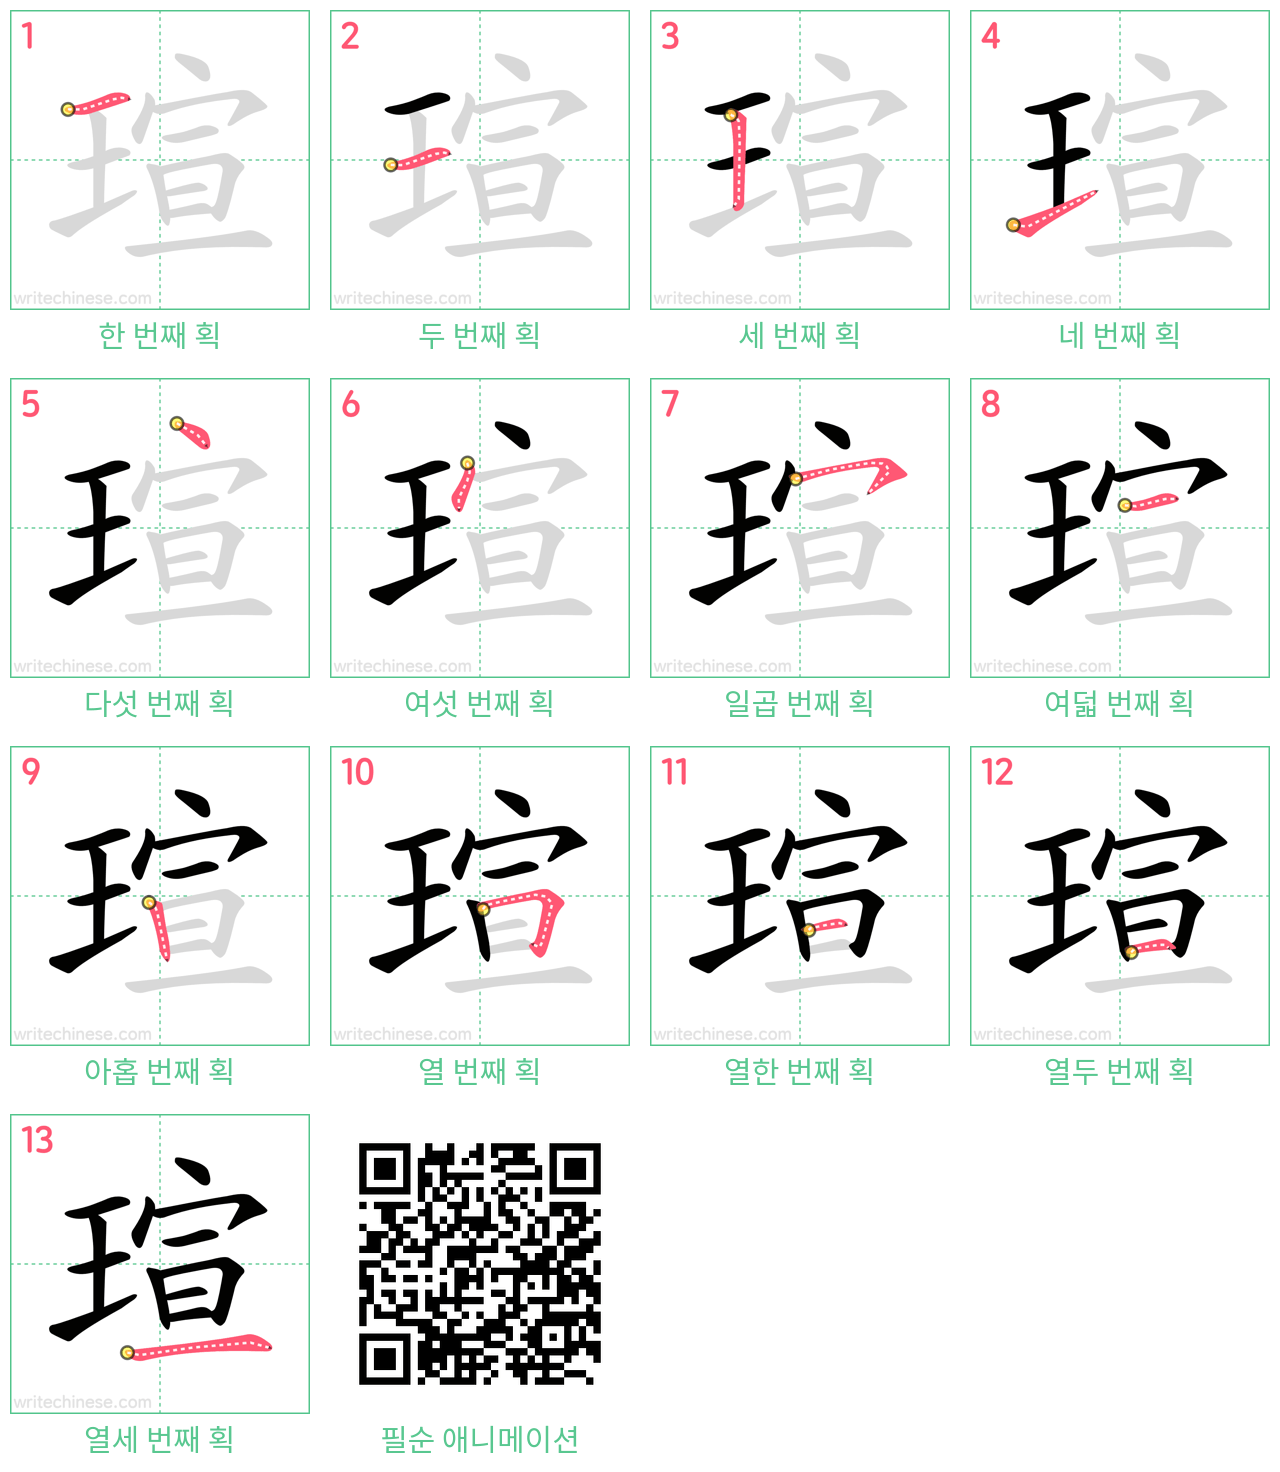 瑄 step-by-step stroke order diagrams